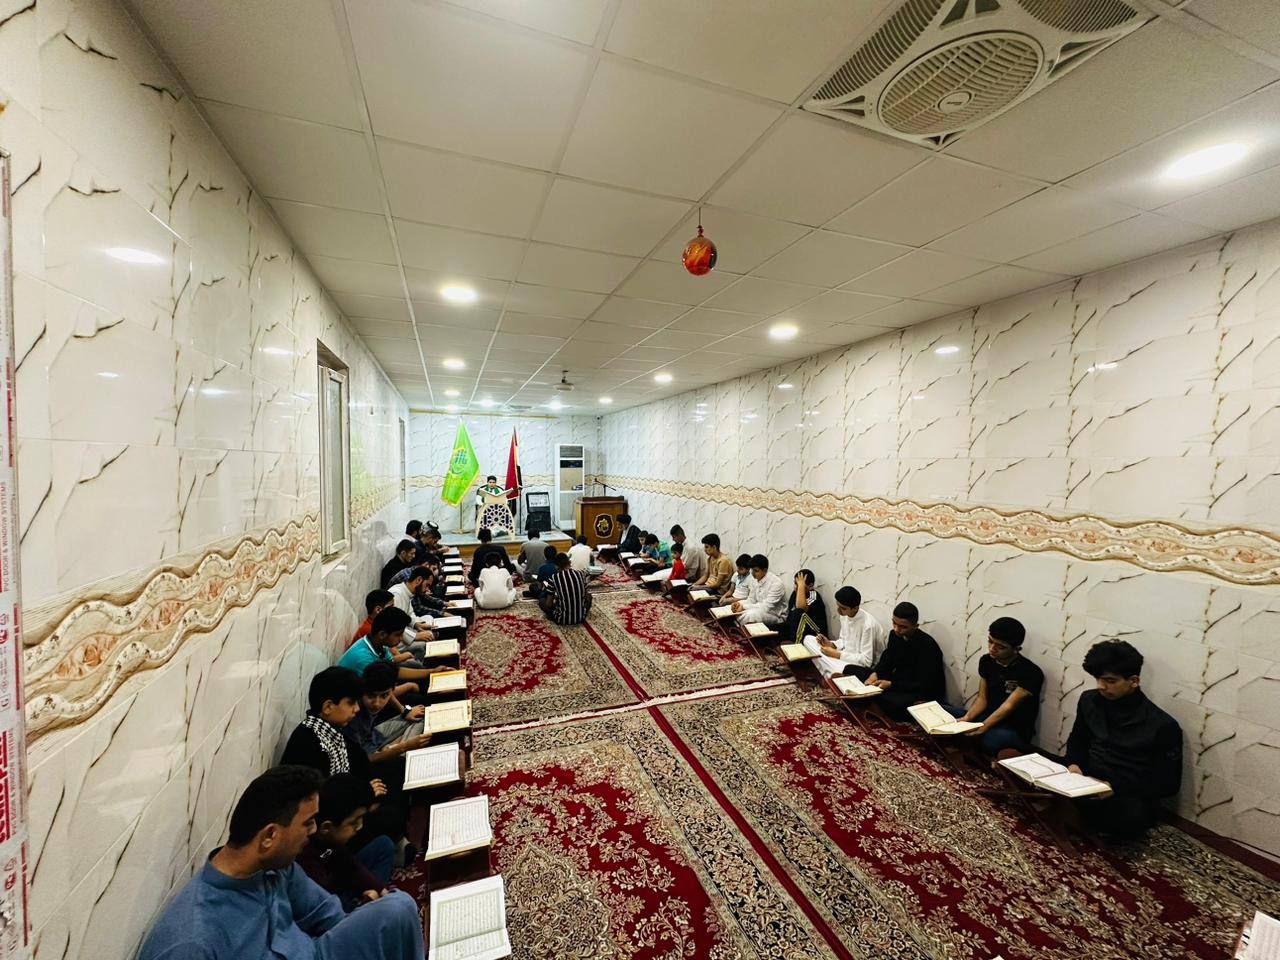 ضمن محافله الدورية معهد القرآن الكريم يقيم محفلًا قرآنيًا في قضاء الهندية